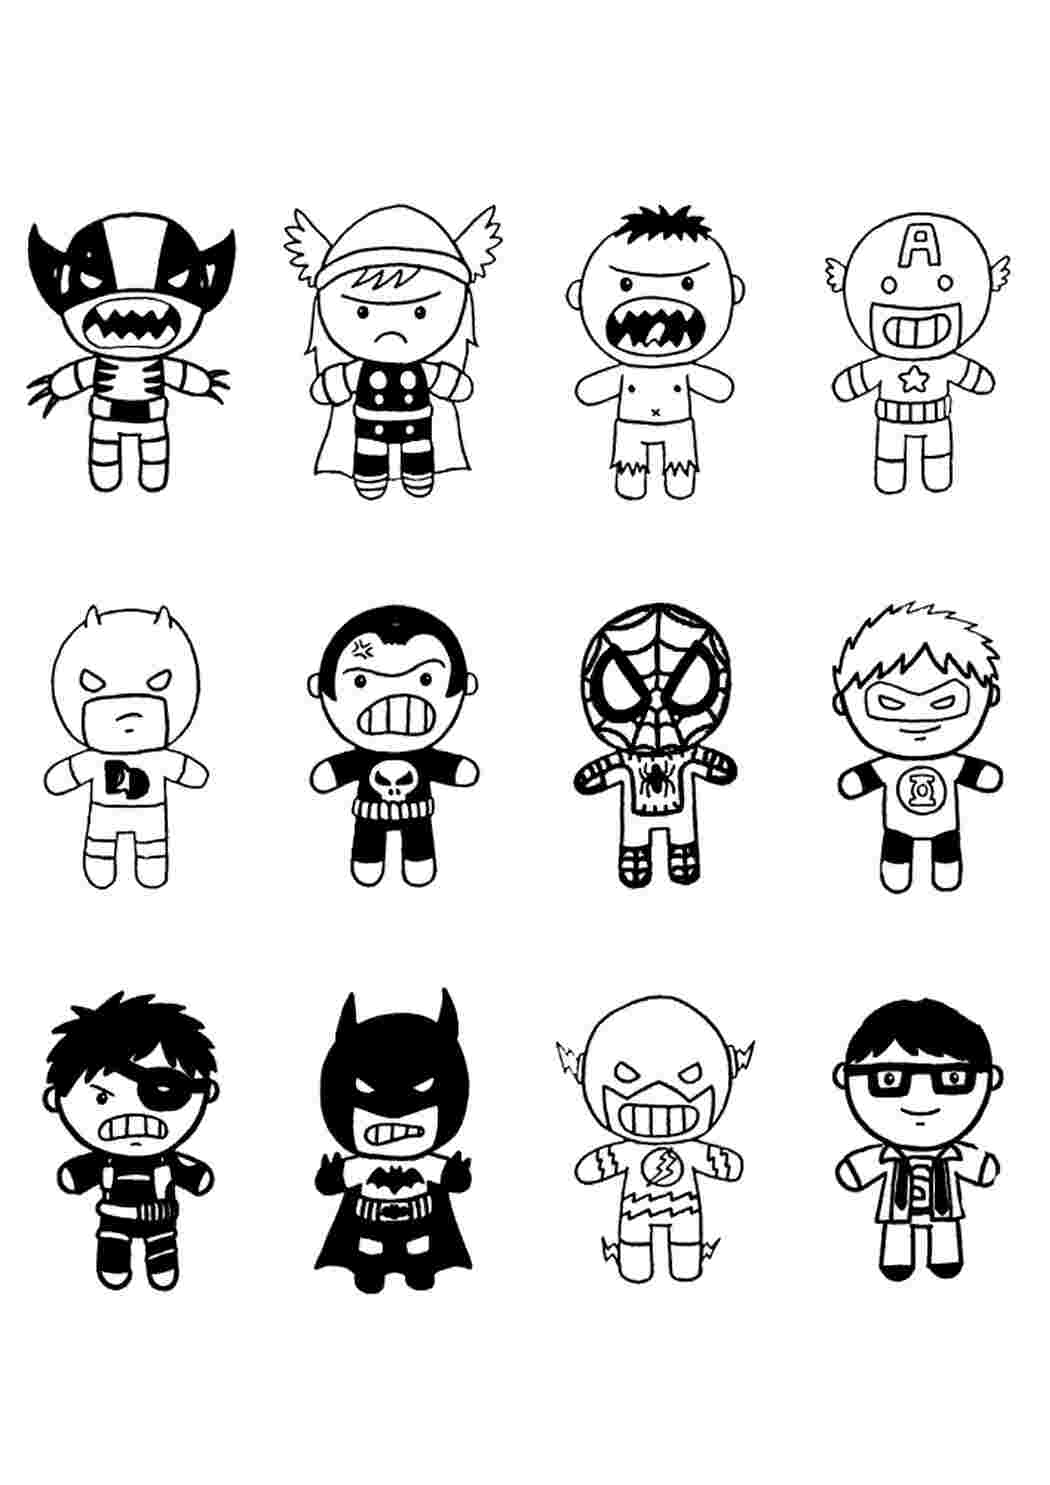 Раскраска супергероев для малышей - скачать или распечатать бесплатно Раскраски скачать и распечатать бесплатно.